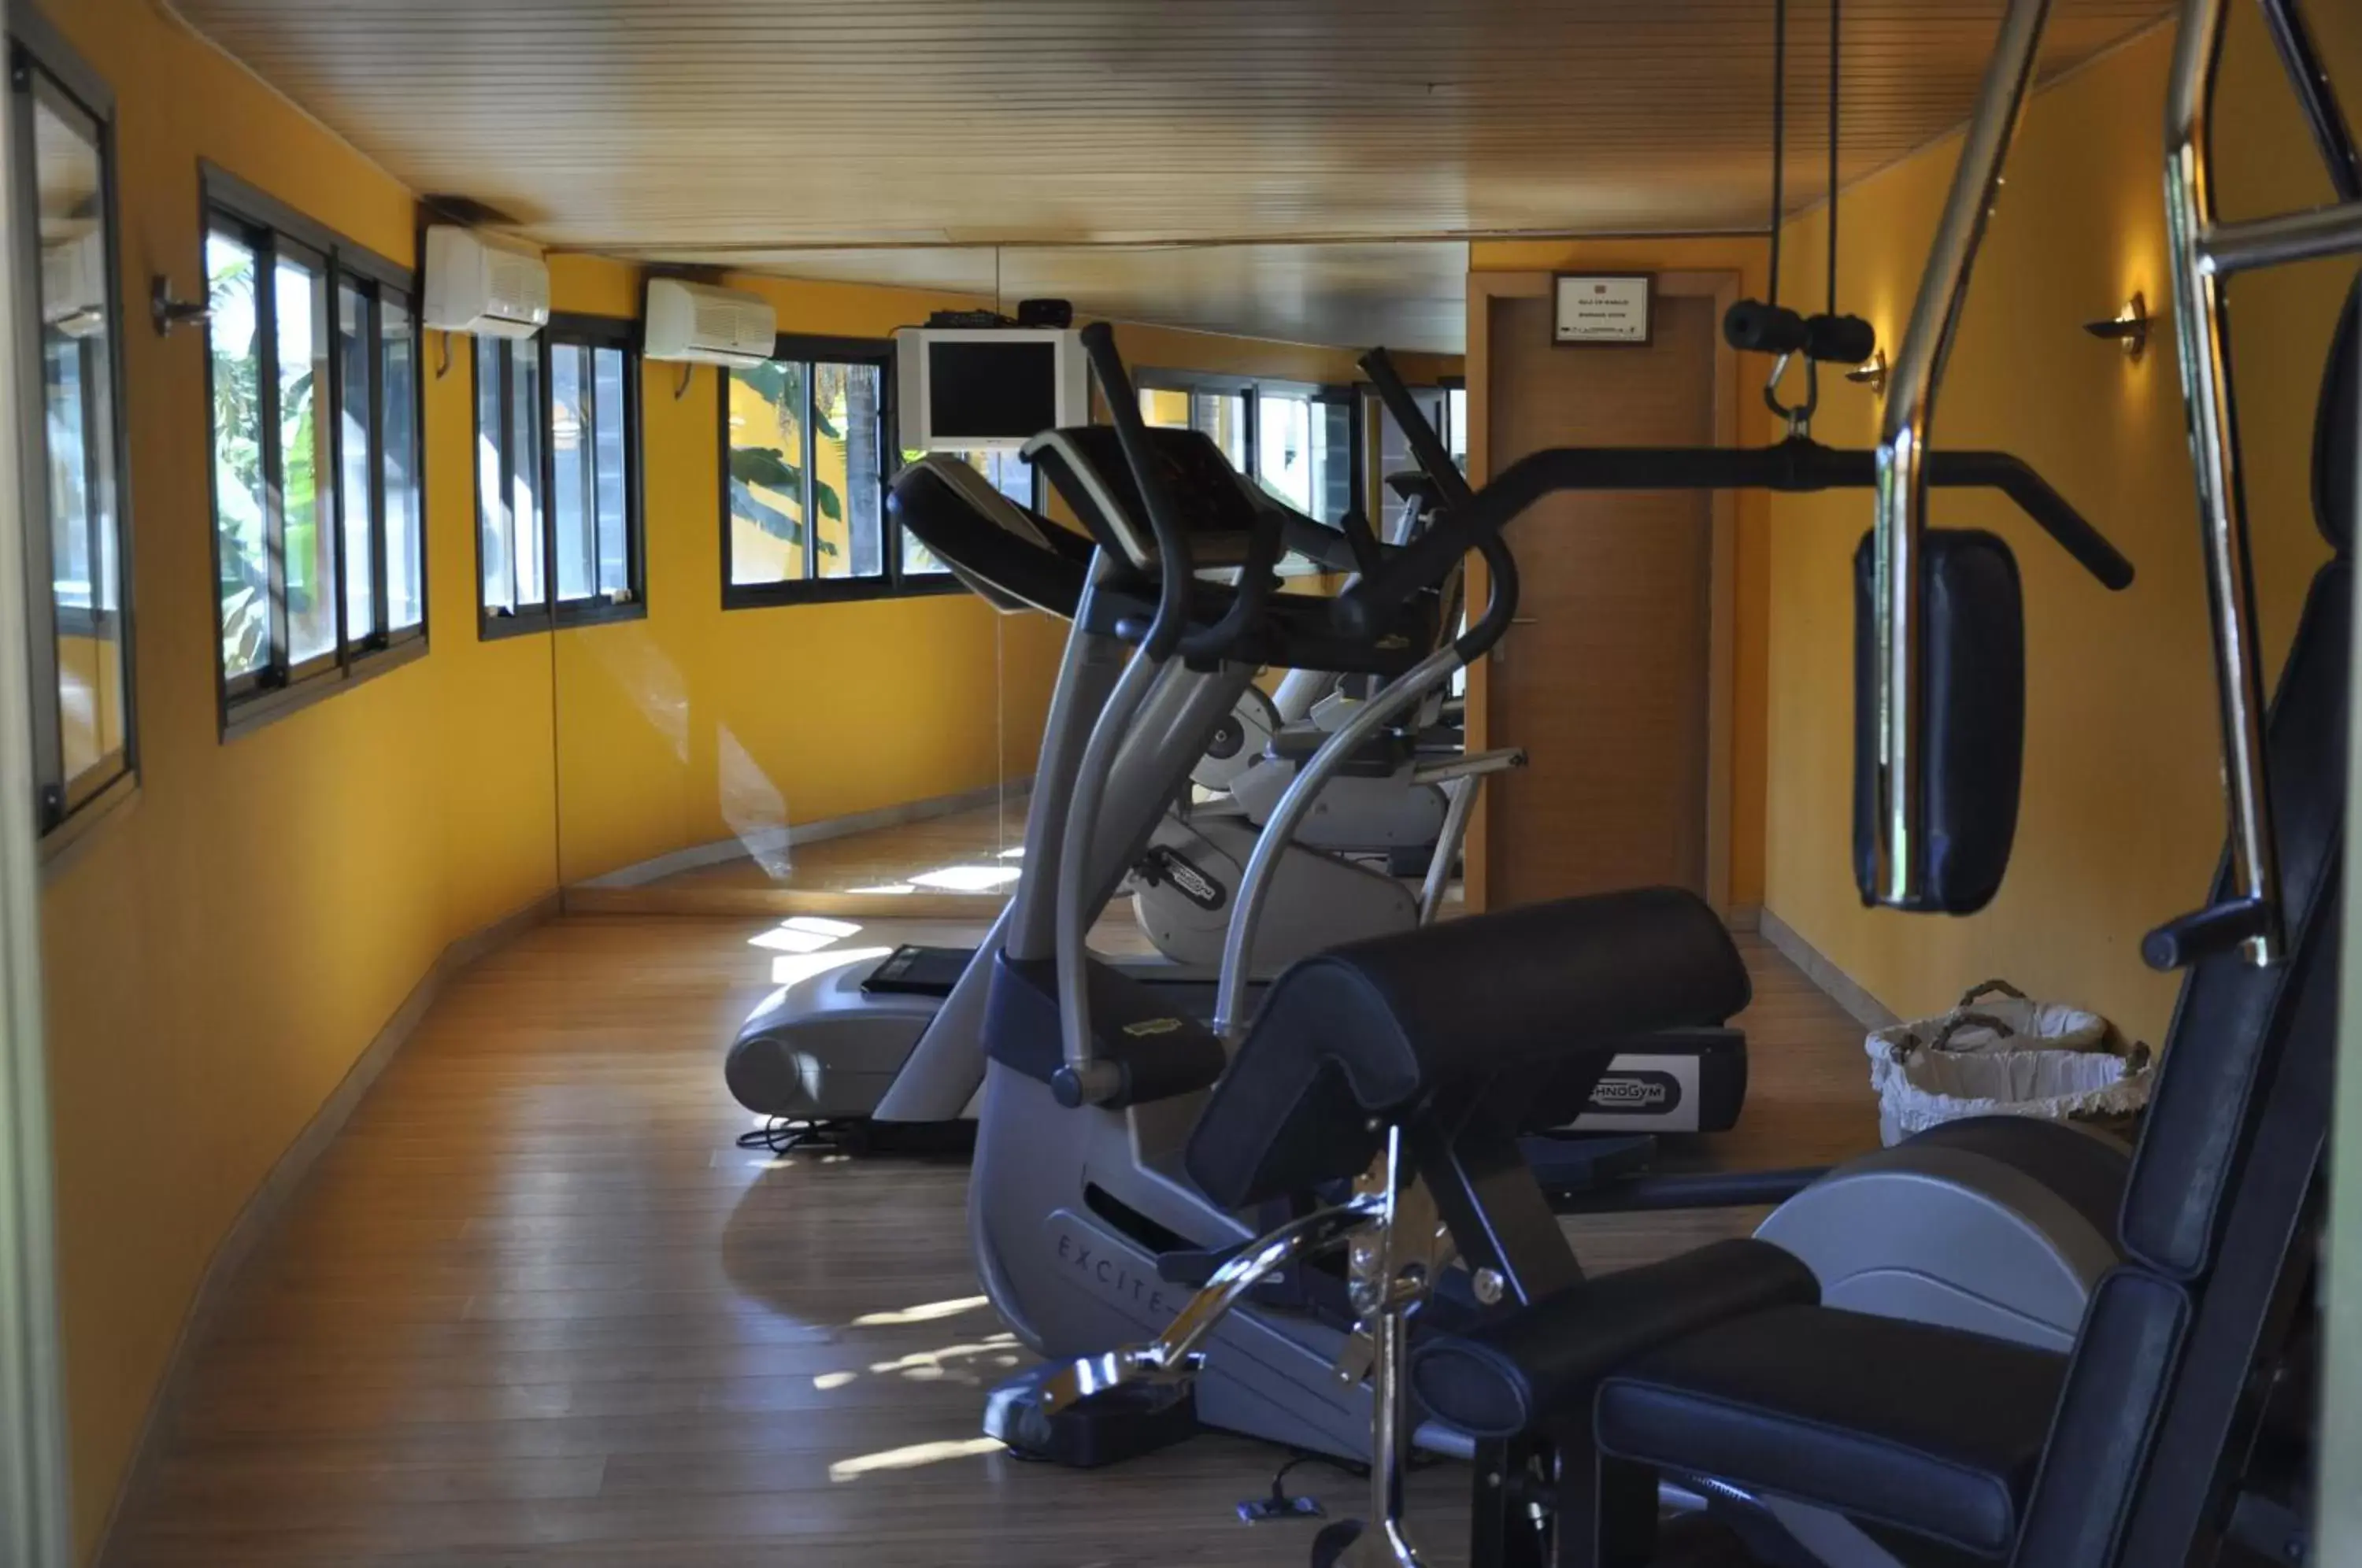 Fitness centre/facilities, Fitness Center/Facilities in Hotel Rural Hacienda del Buen Suceso